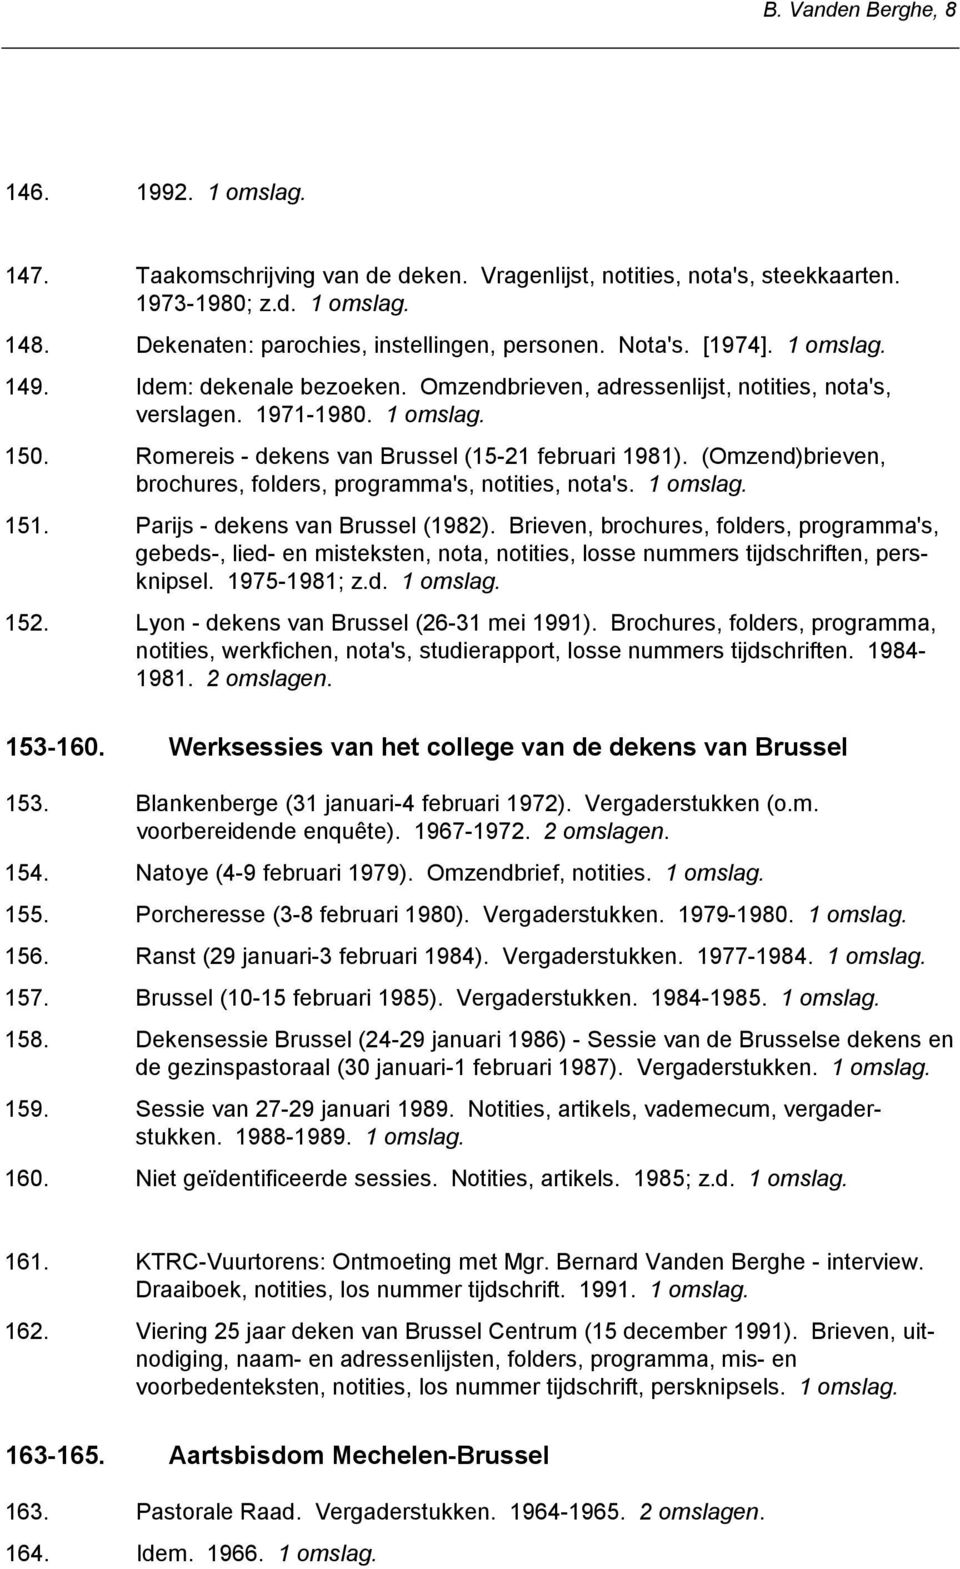 (Omzend)brieven, brochures, folders, programma's, notities, nota's. 151. Parijs - dekens van Brussel (1982).